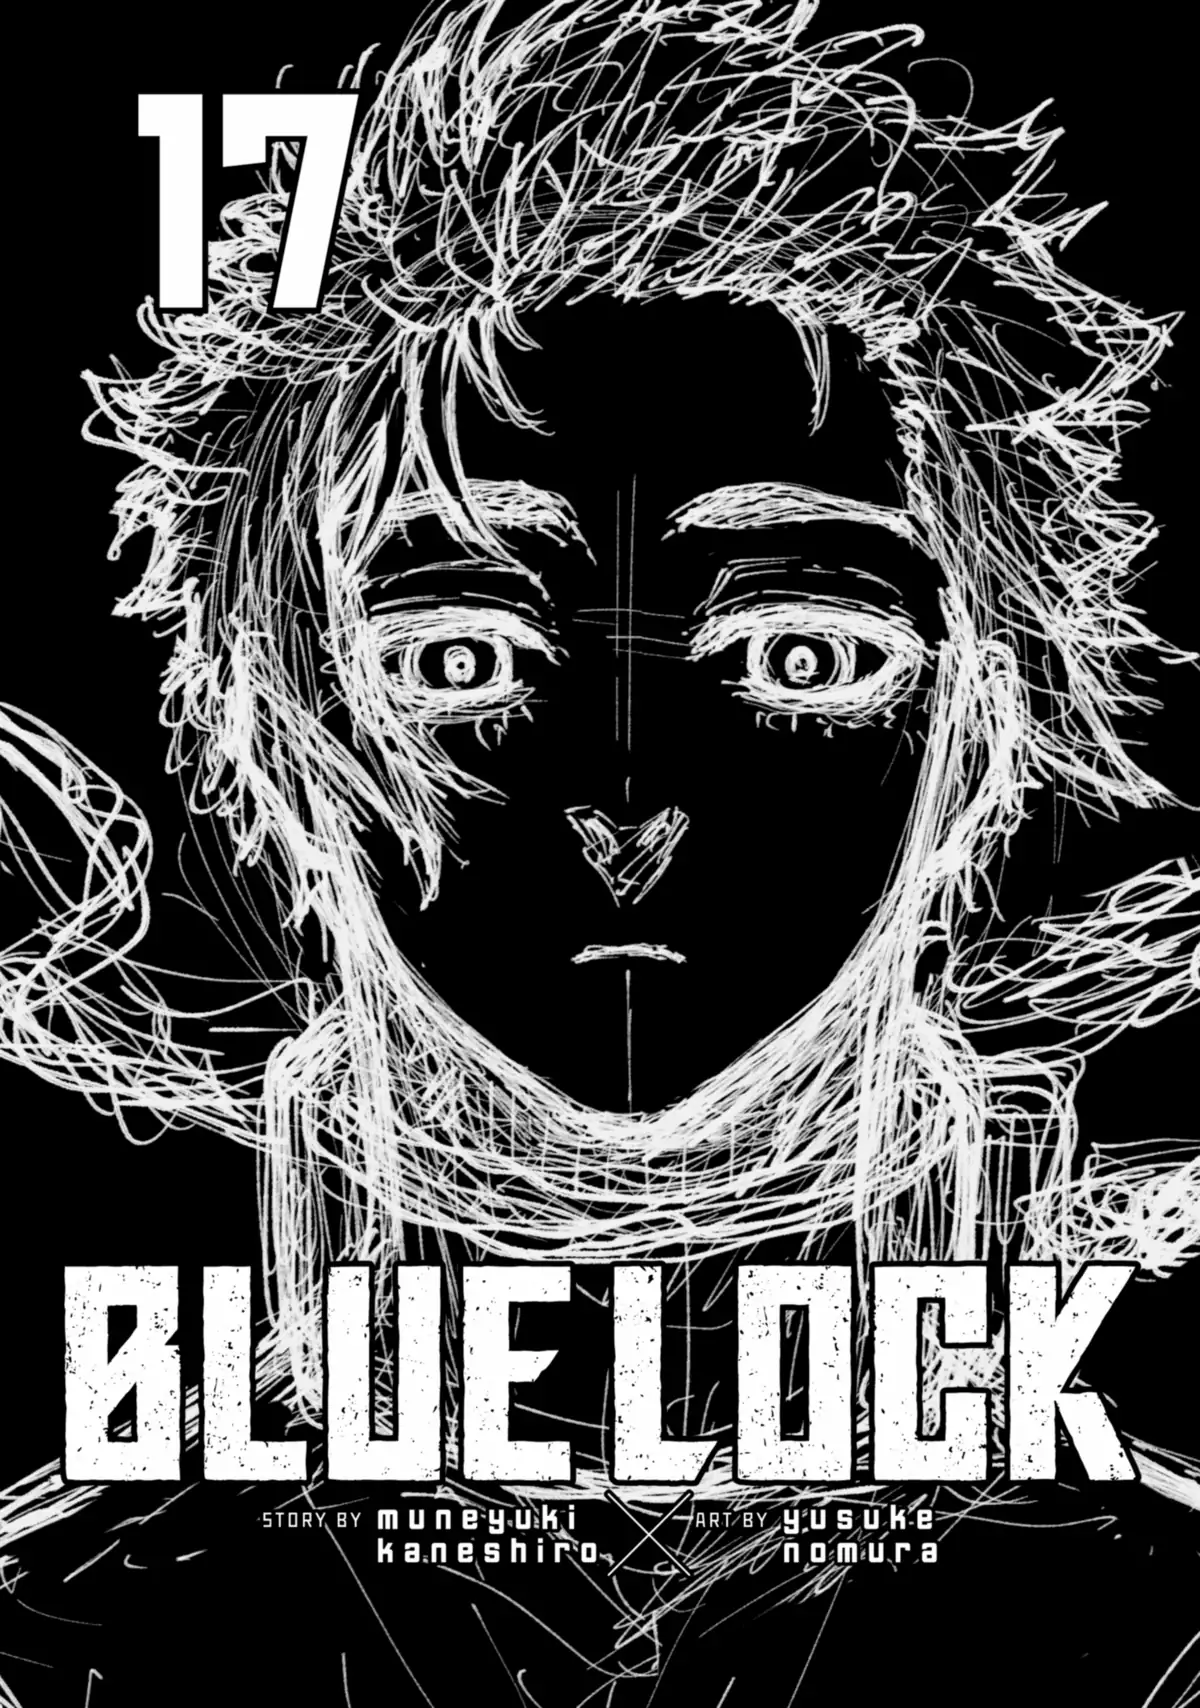 Blue Lock Vol. 17